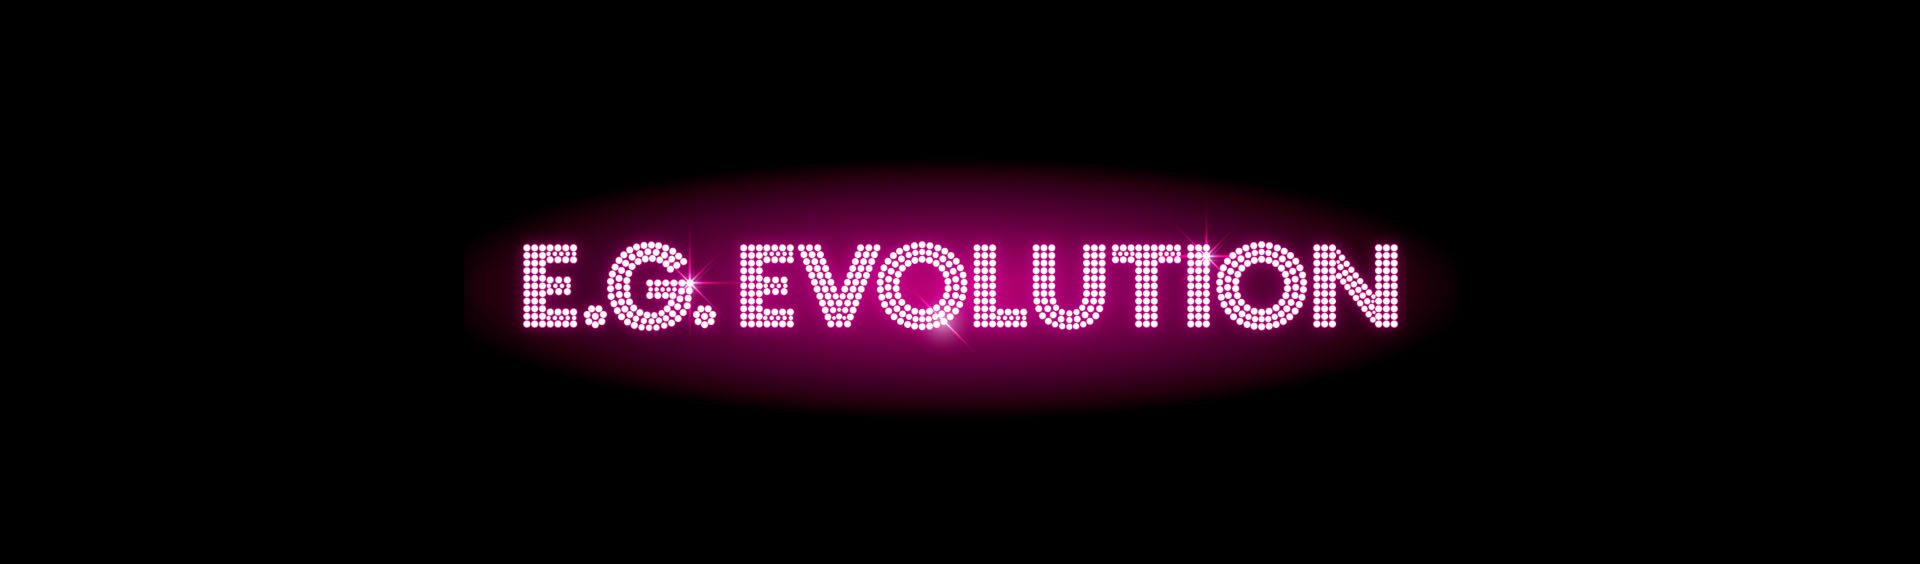 E-girls LIVE 2017 ~E.G.EVOLUTION~ | LDH Girls Wiki | Fandom